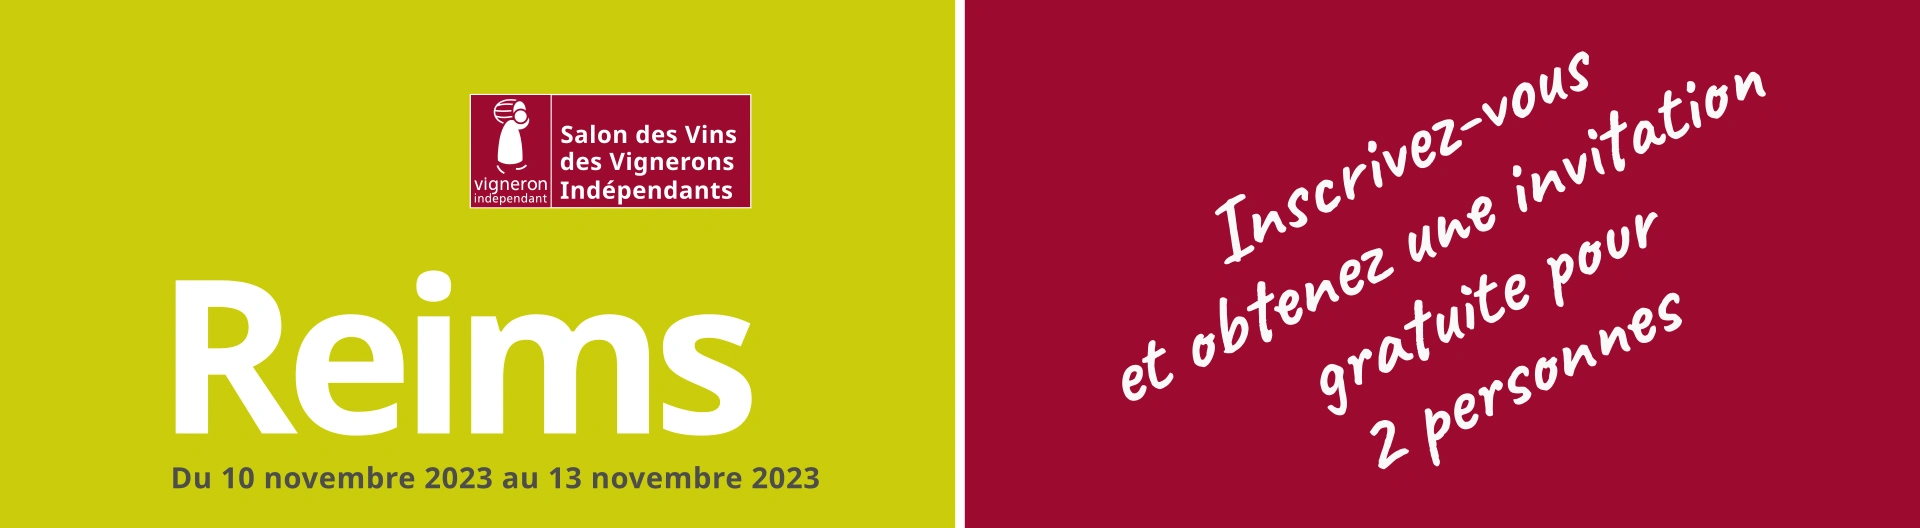 Château Gûnes au 31ème Salon des Vins des Vignerons Indépendants de Reims. 10-13 novembre 2023